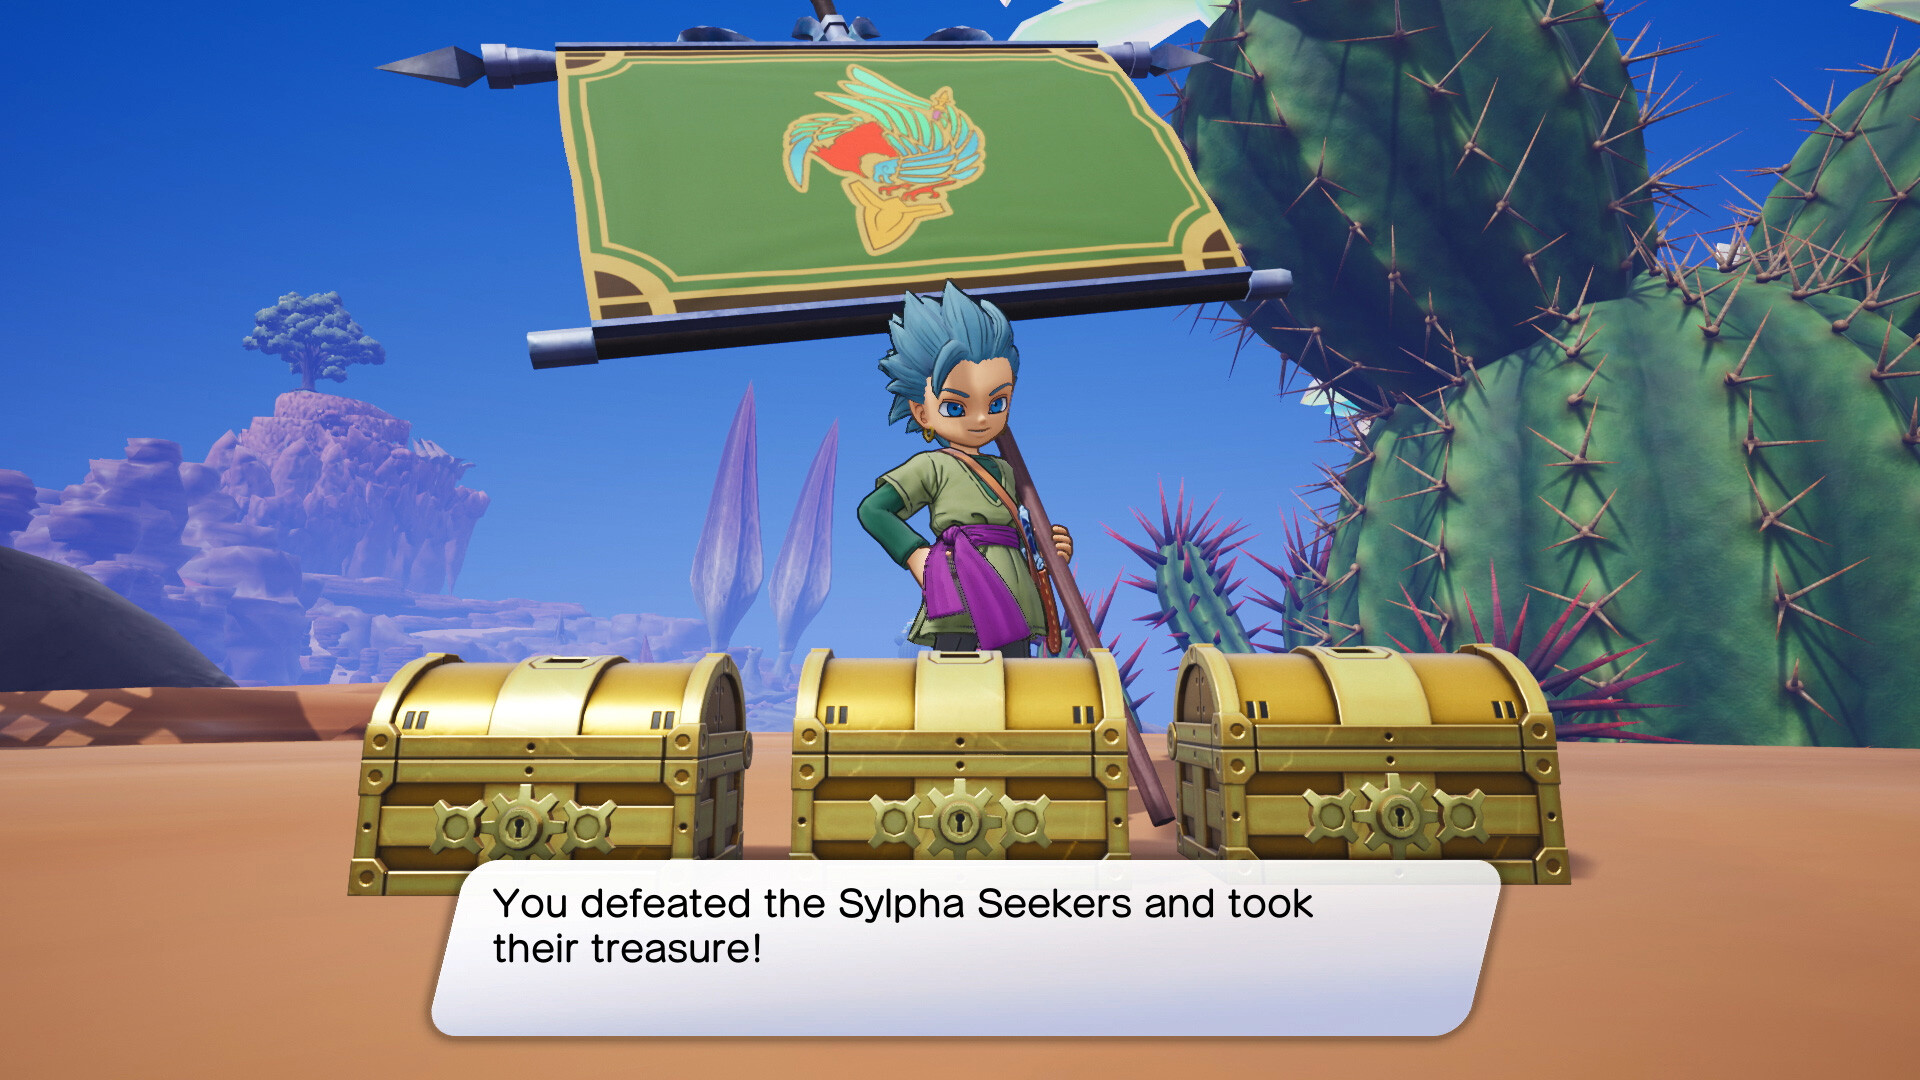 Buy Dragon Quest Treasures Steam